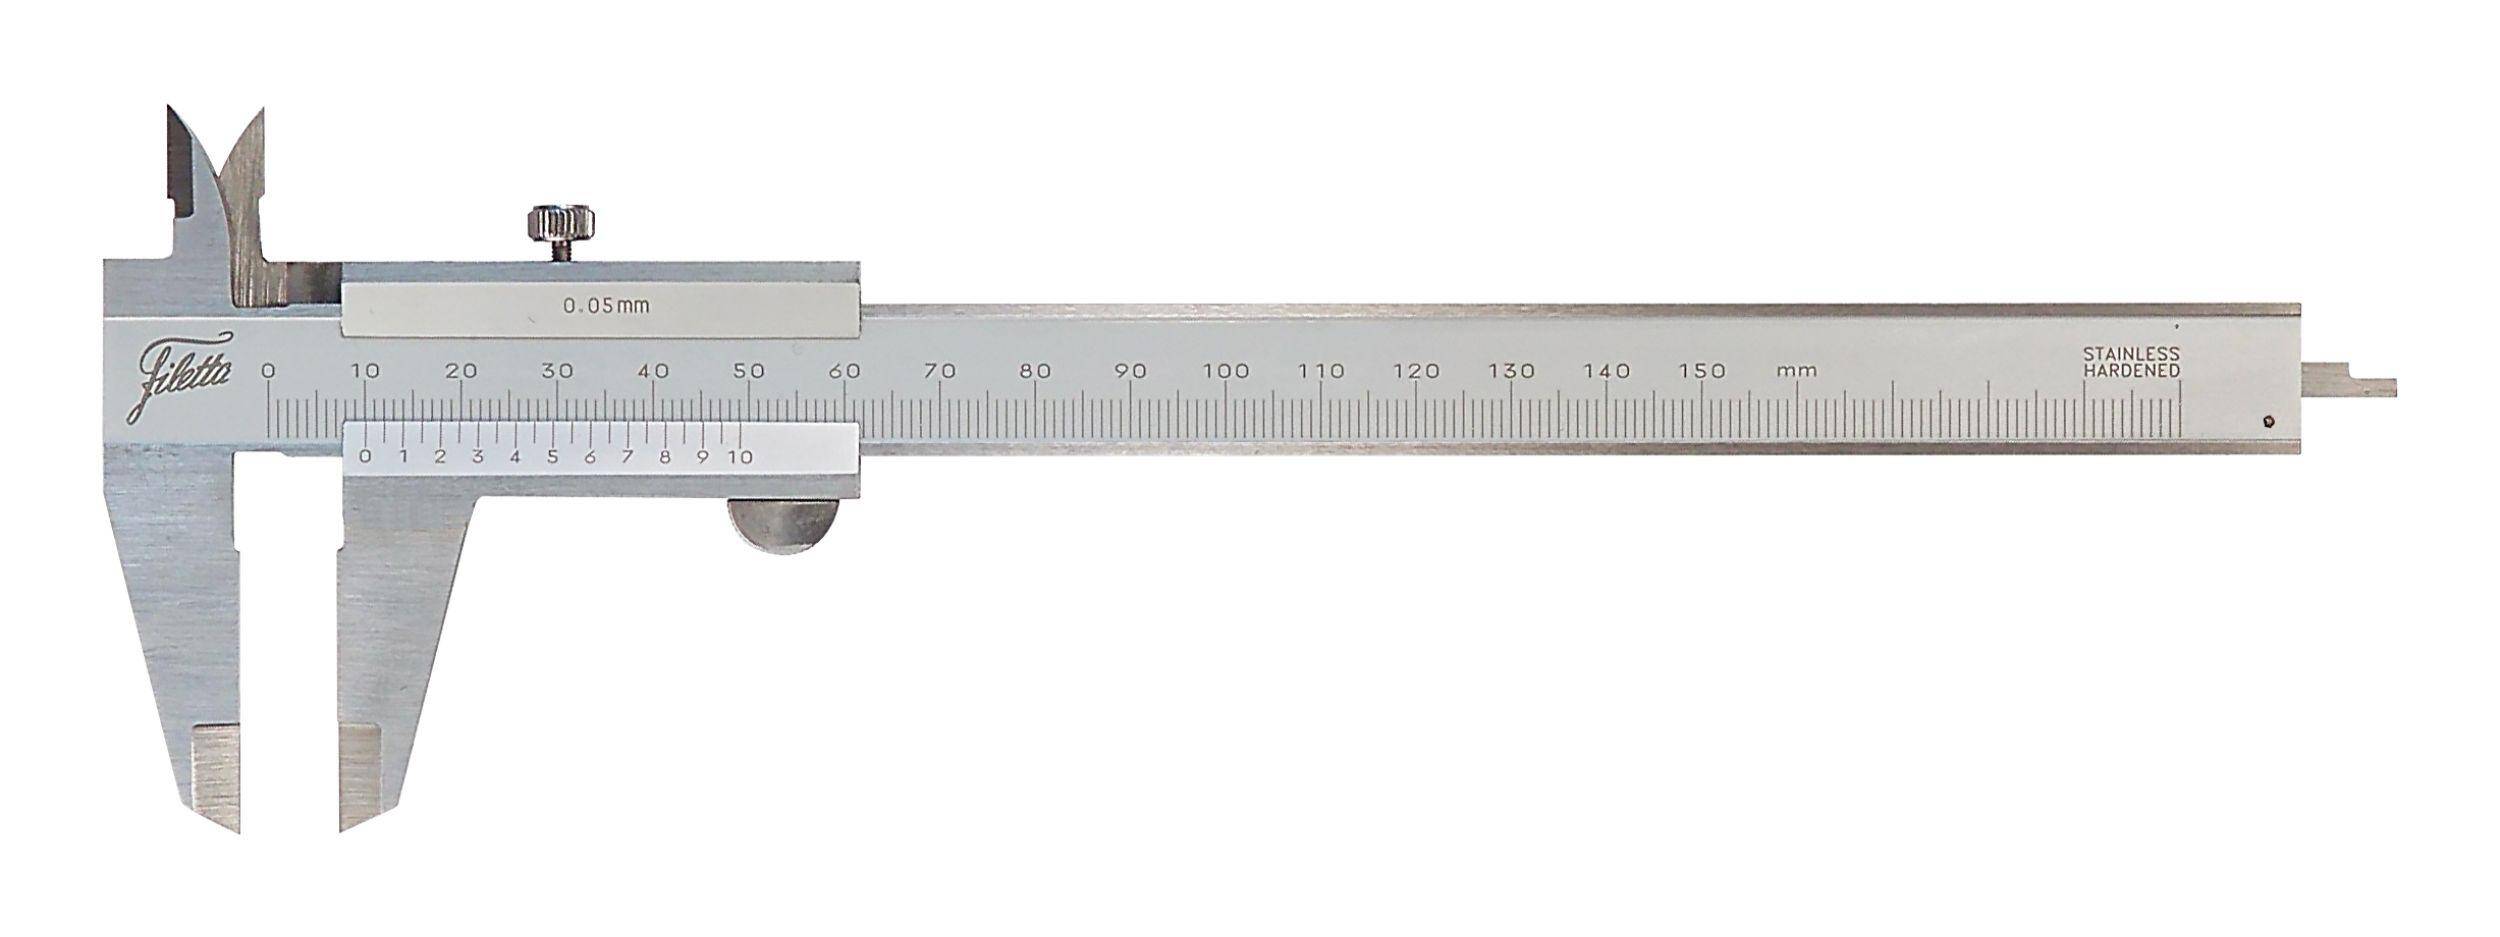 SCHUT suwmiarka analogowa 150/0.05 mm + świadectwo wzorcowania 909.521 WZORC (Zdjęcie 3)